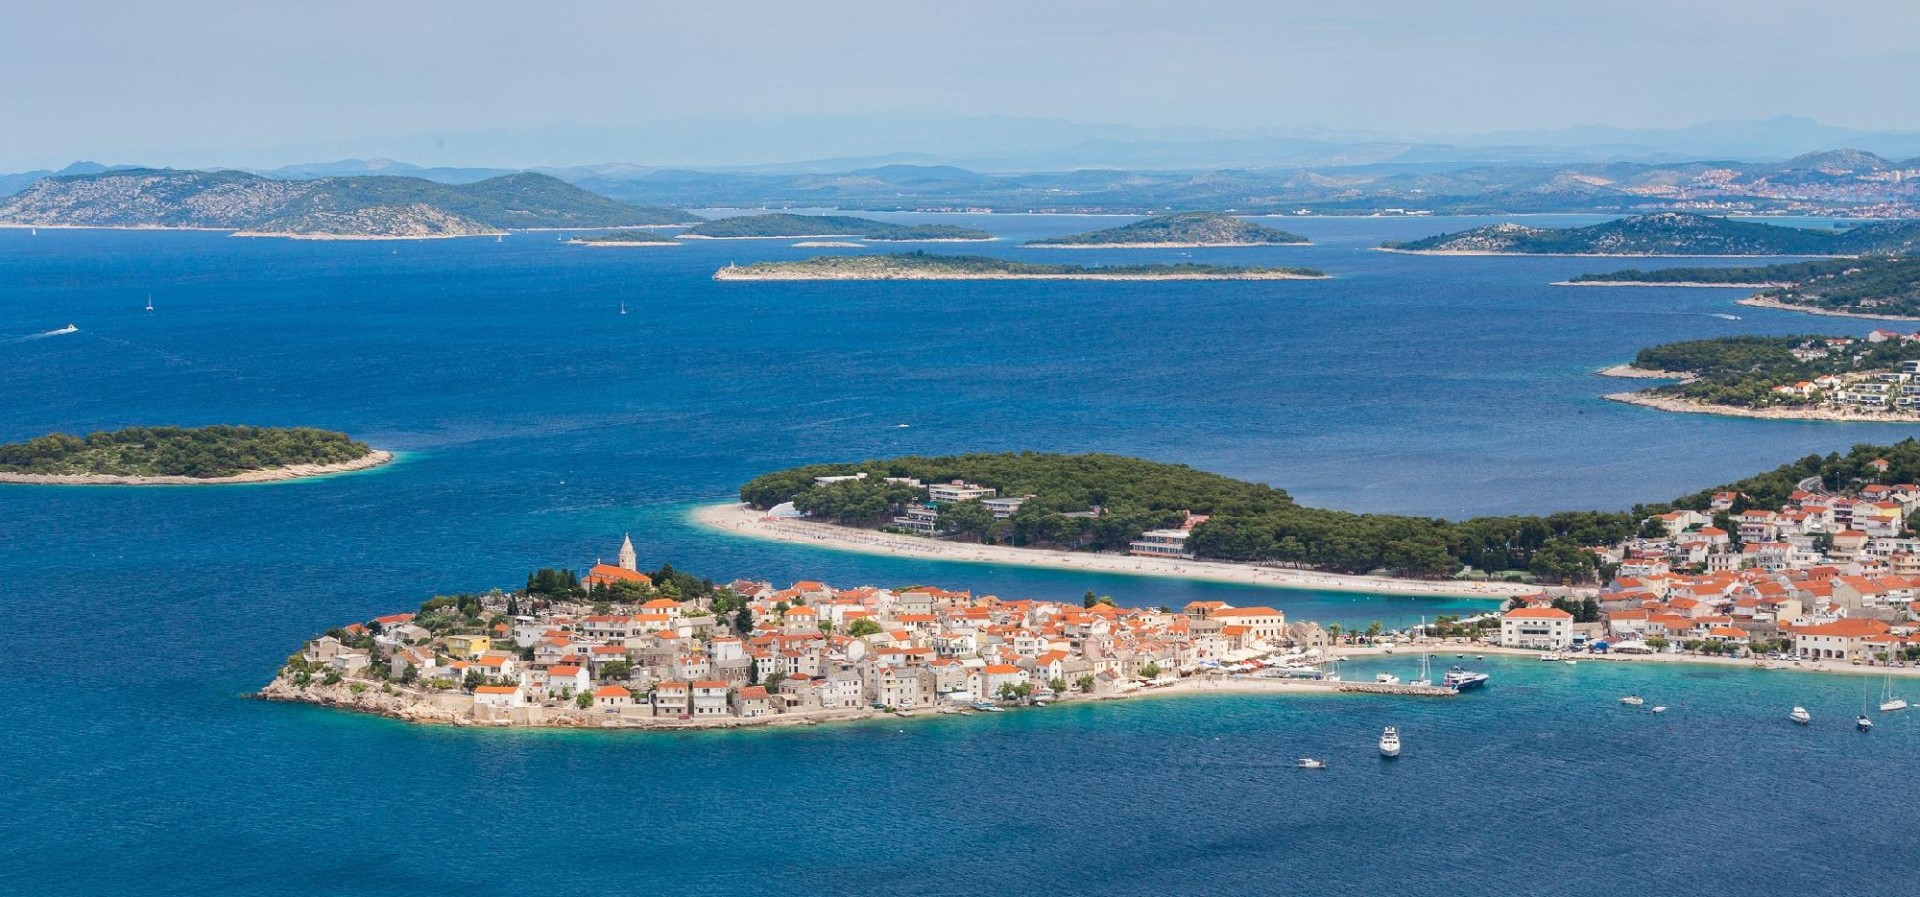 Ez idén a legvonzóbb úticél a horvát tengerparton